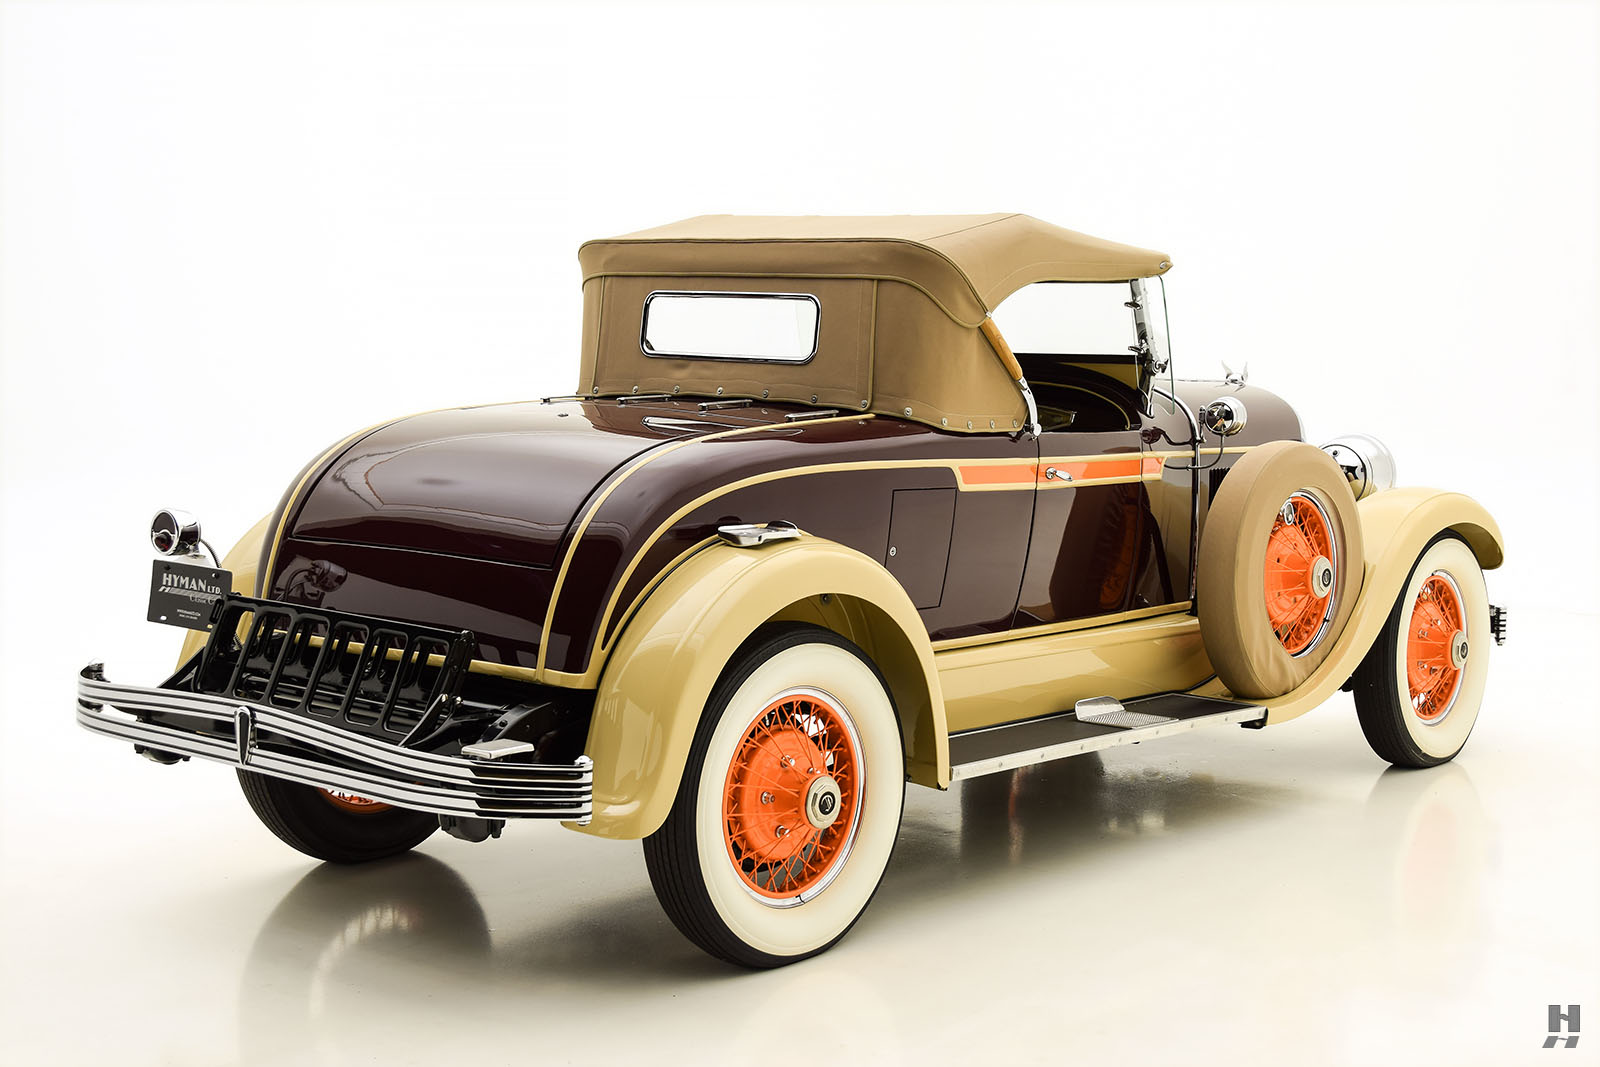 1926 chrysler model g70 royal